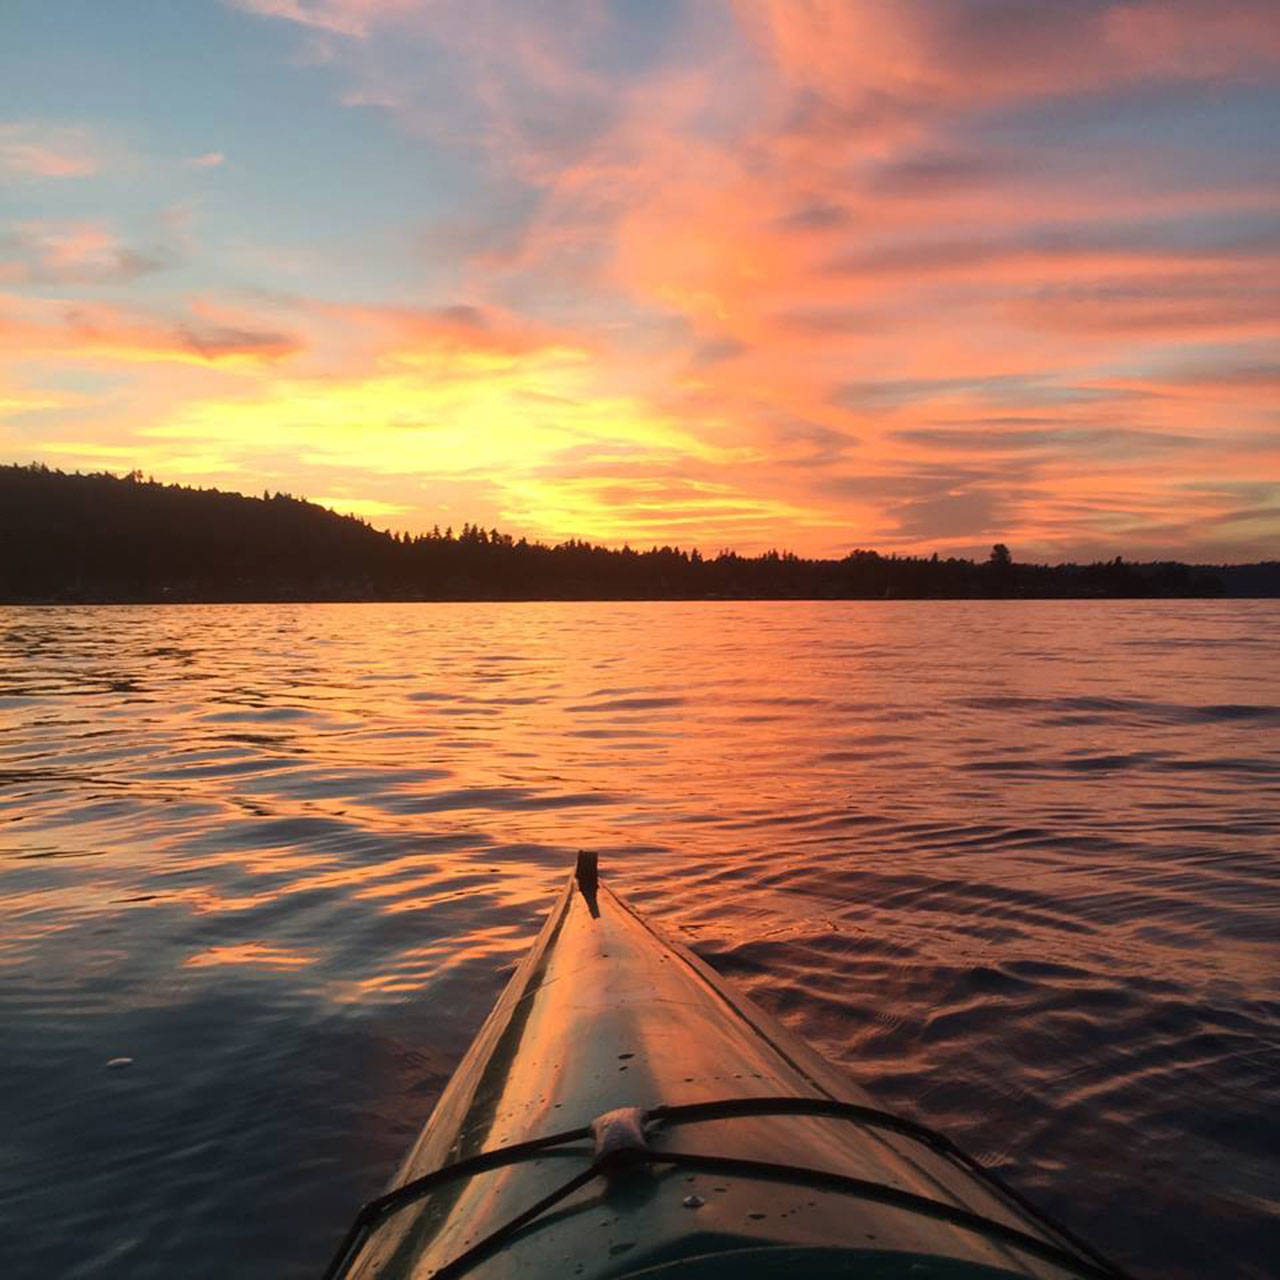 A sunset over Lake Sammamish. Photo courtesy of Dana Jaime Rundle.